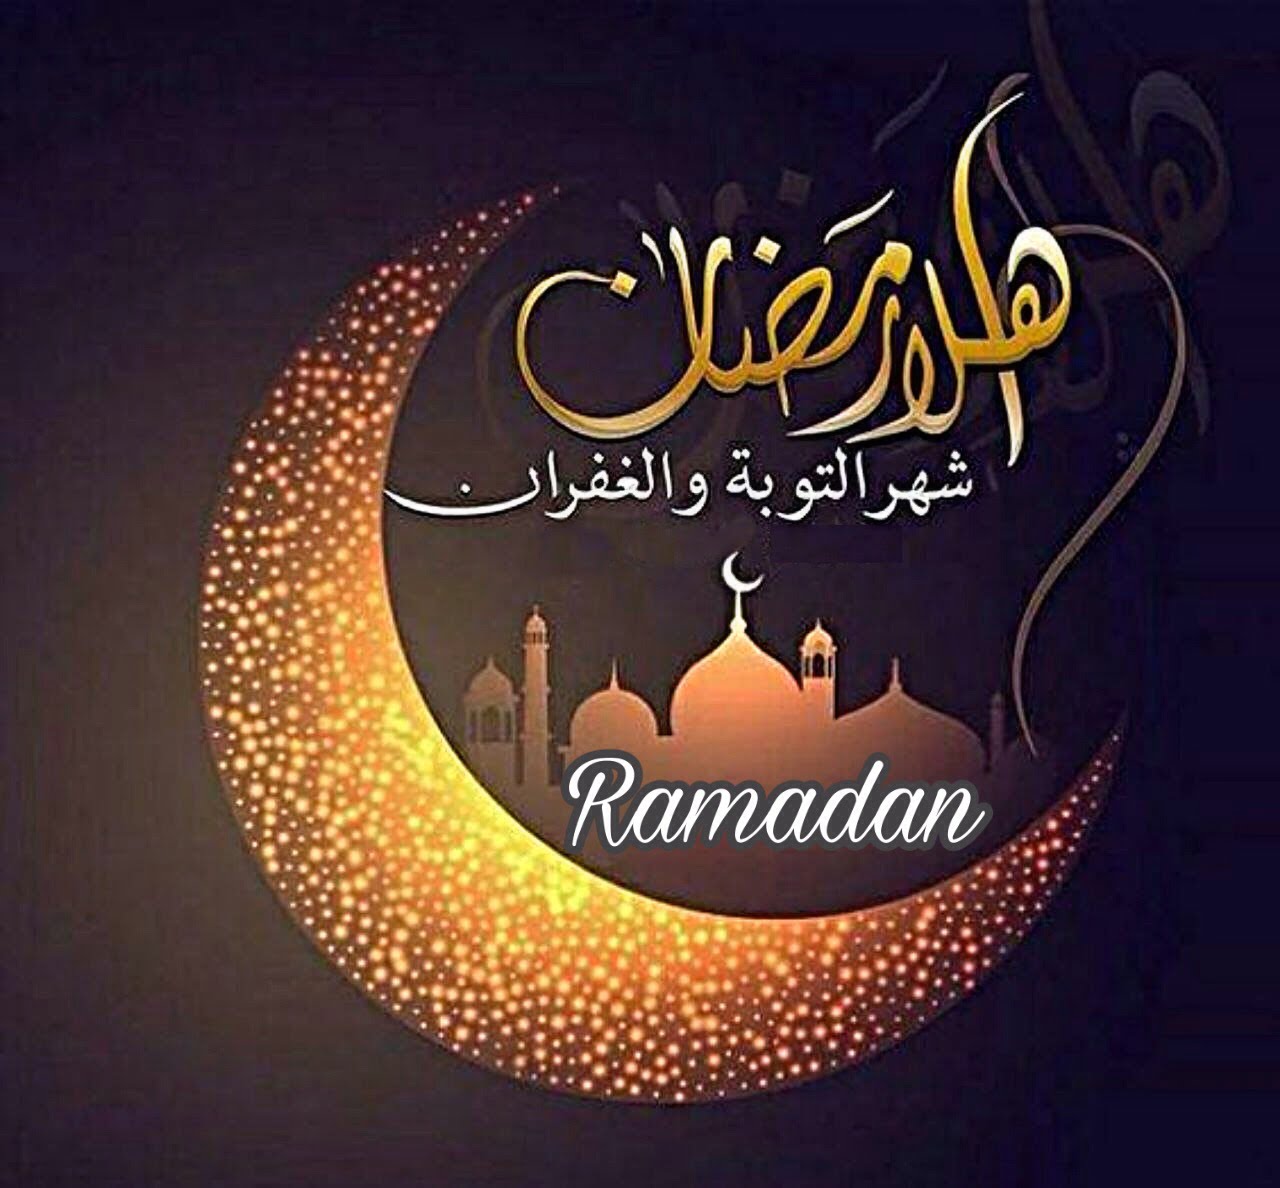 البحوث الفلكية و رؤية هلال شهر رمضان 1440 و اول ايام رمضان 2019